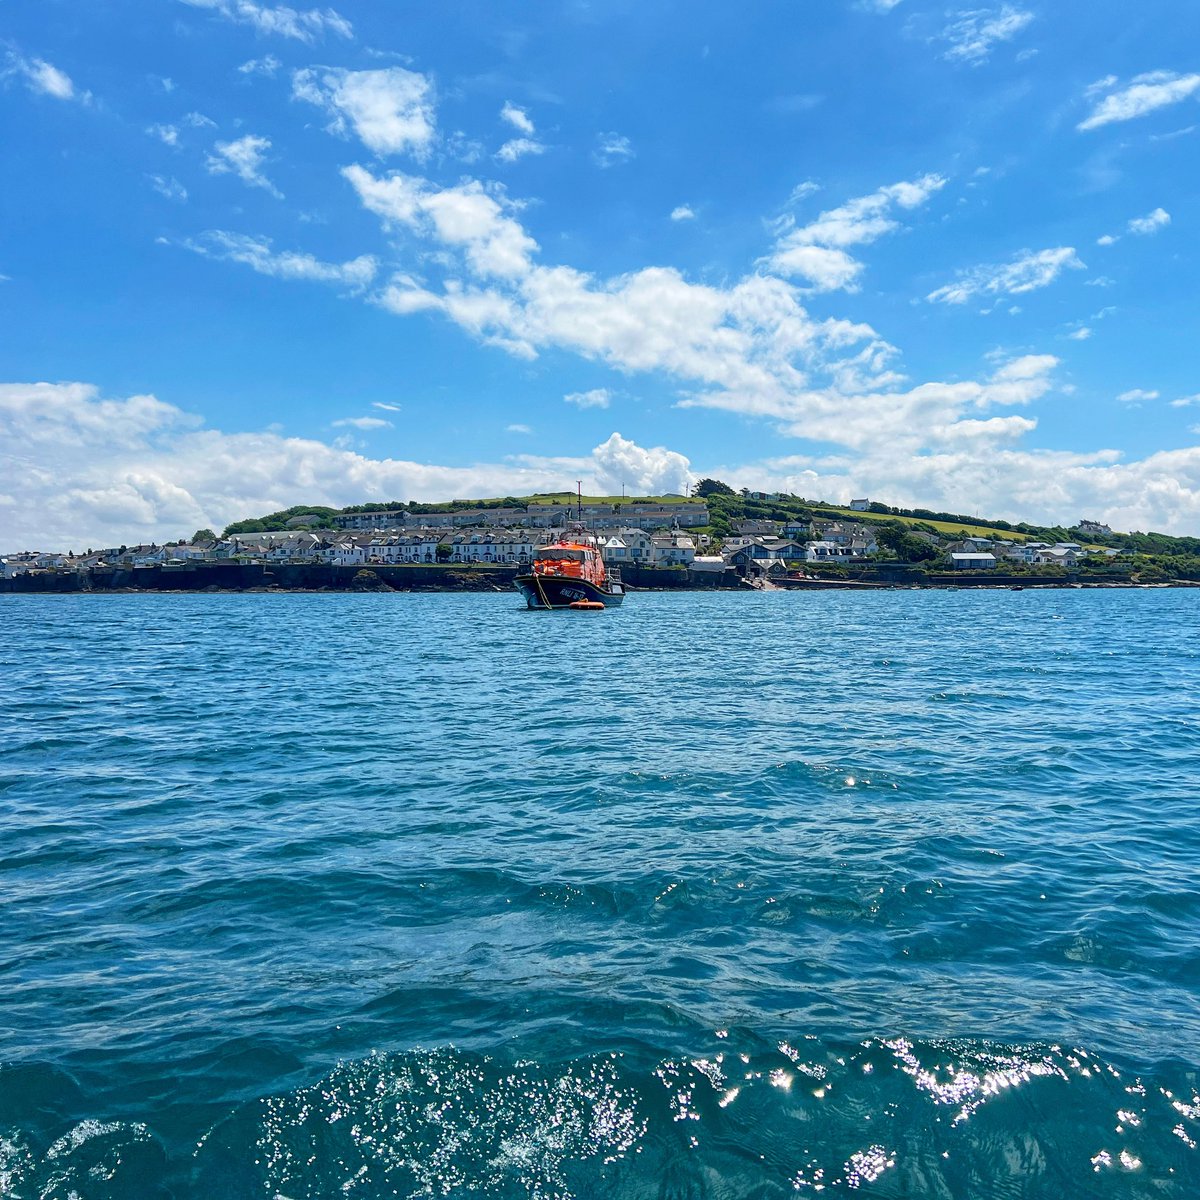 #Appledore #Lifeboat, the Mollie Hunt. One of my favourite sights when we come in on the estuary.
She’s been keeping us safe since 2010

#rnli #molliehunt #northdevon #picoftheday #north_devon #visitdevon #lovedevon #springindevon #devongin #atlanticspiritgin #spiritofnorthdevon